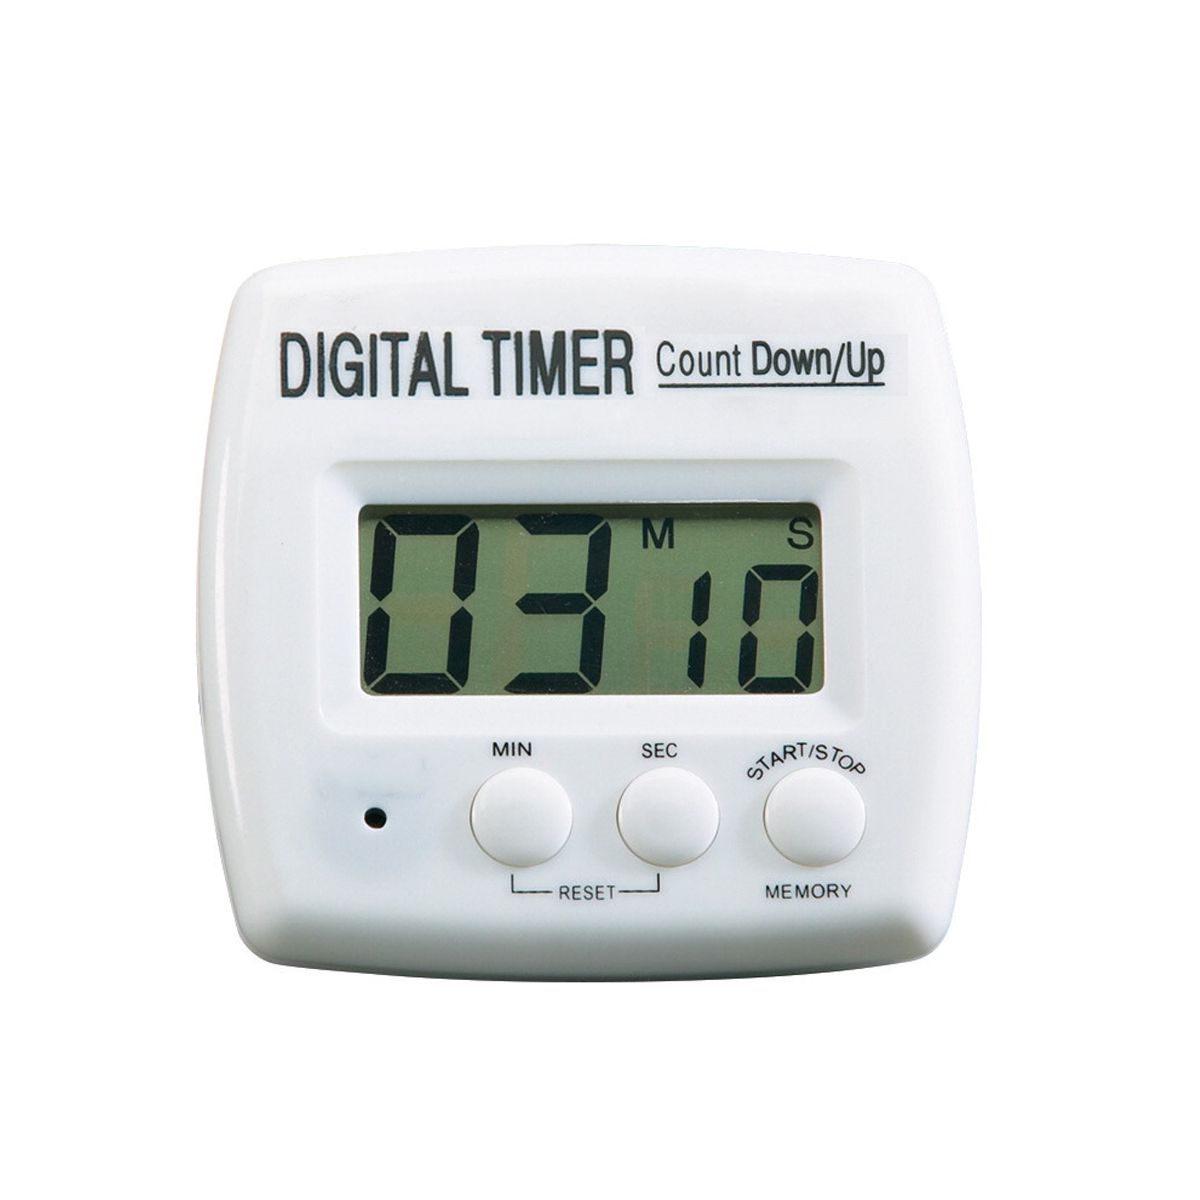 Temporizador 50 minutos - Temporizador online (timer)